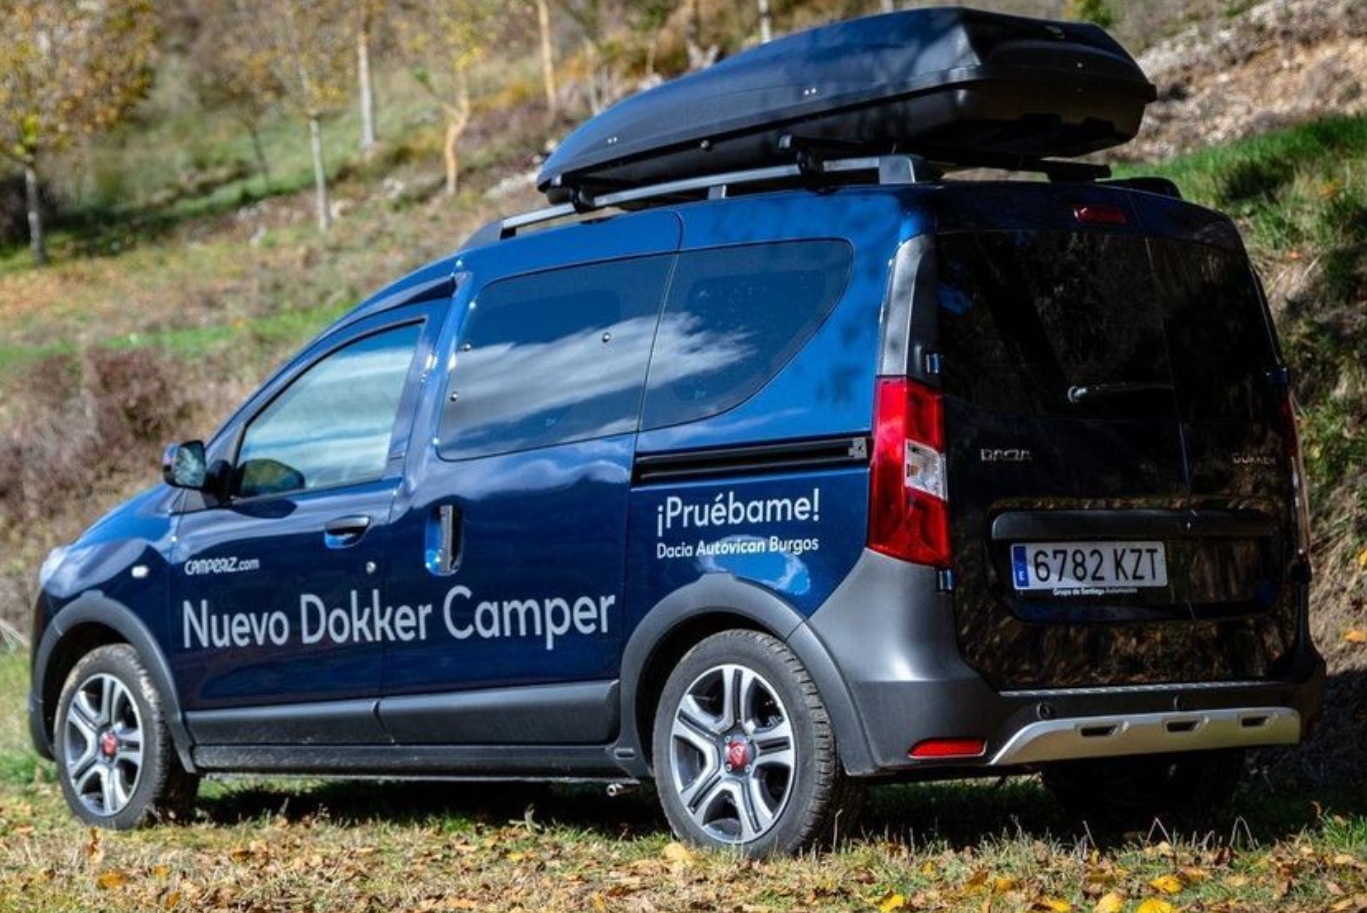 Dacia Dokker vans revealed